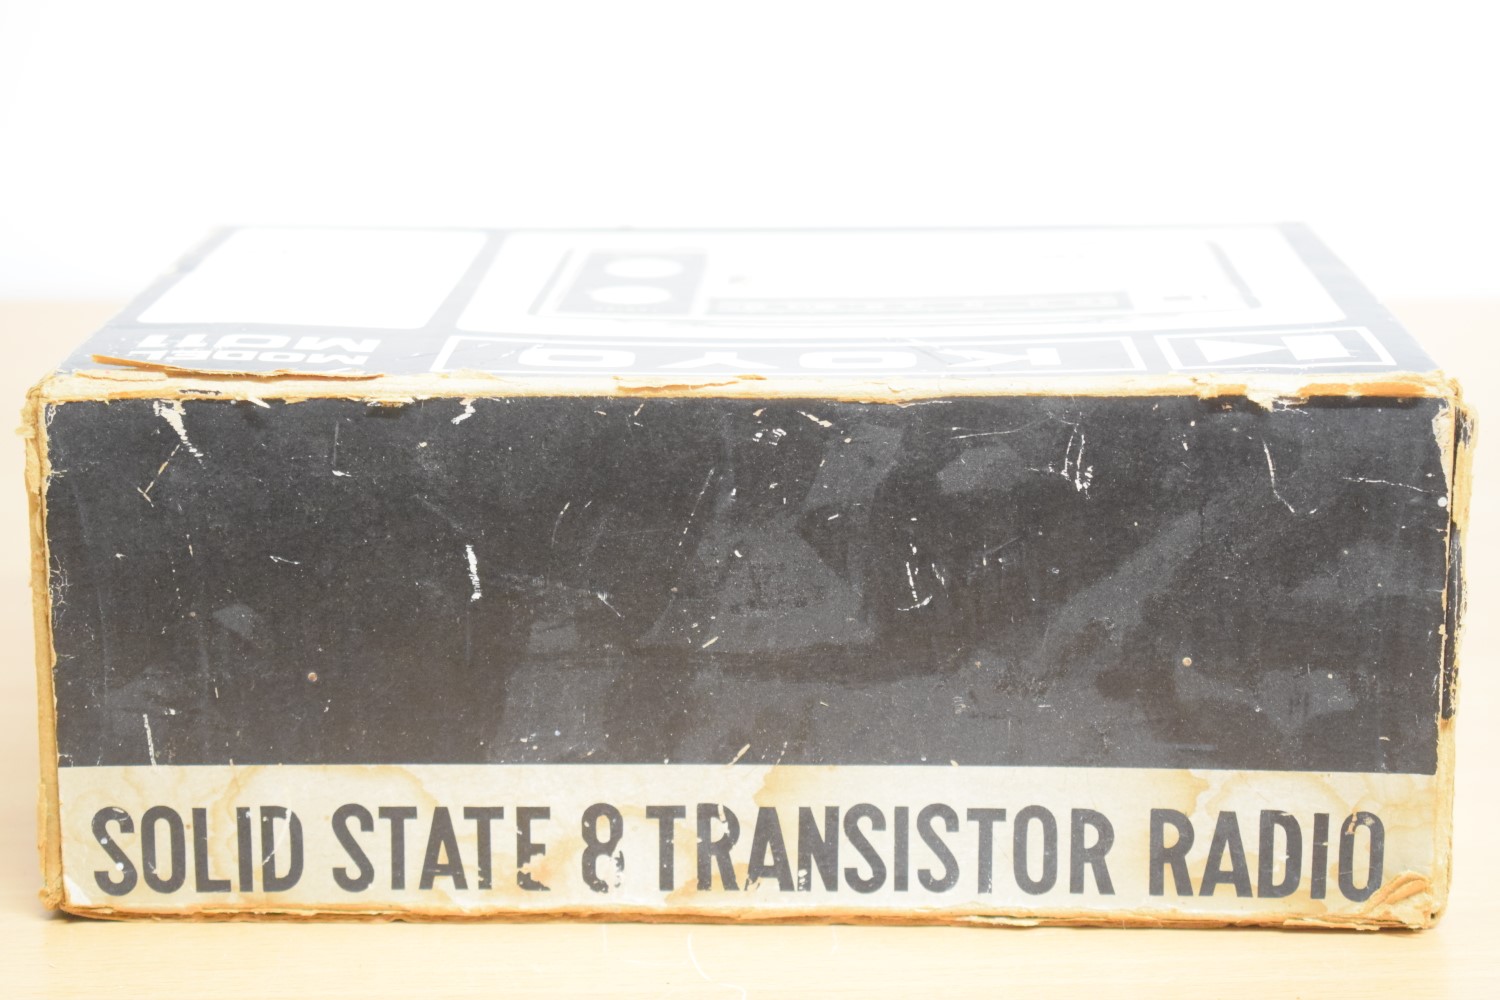 Koyo MO11 Transistor Radio – In original packaging